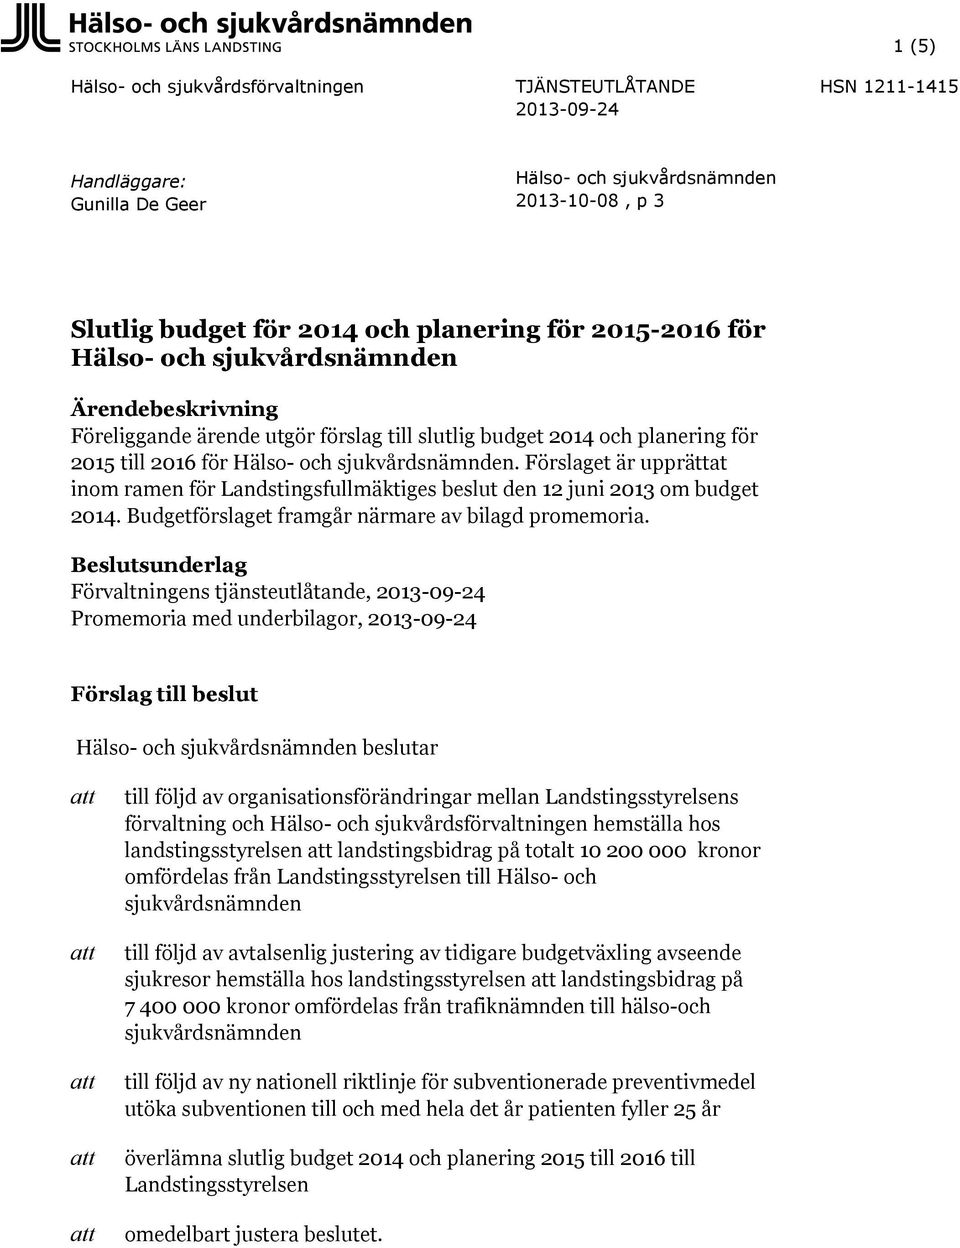 Förslaget är upprättat inom ramen för Landstingsfullmäktiges beslut den 12 juni 2013 om budget 2014. Budgetförslaget framgår närmare av bilagd promemoria.